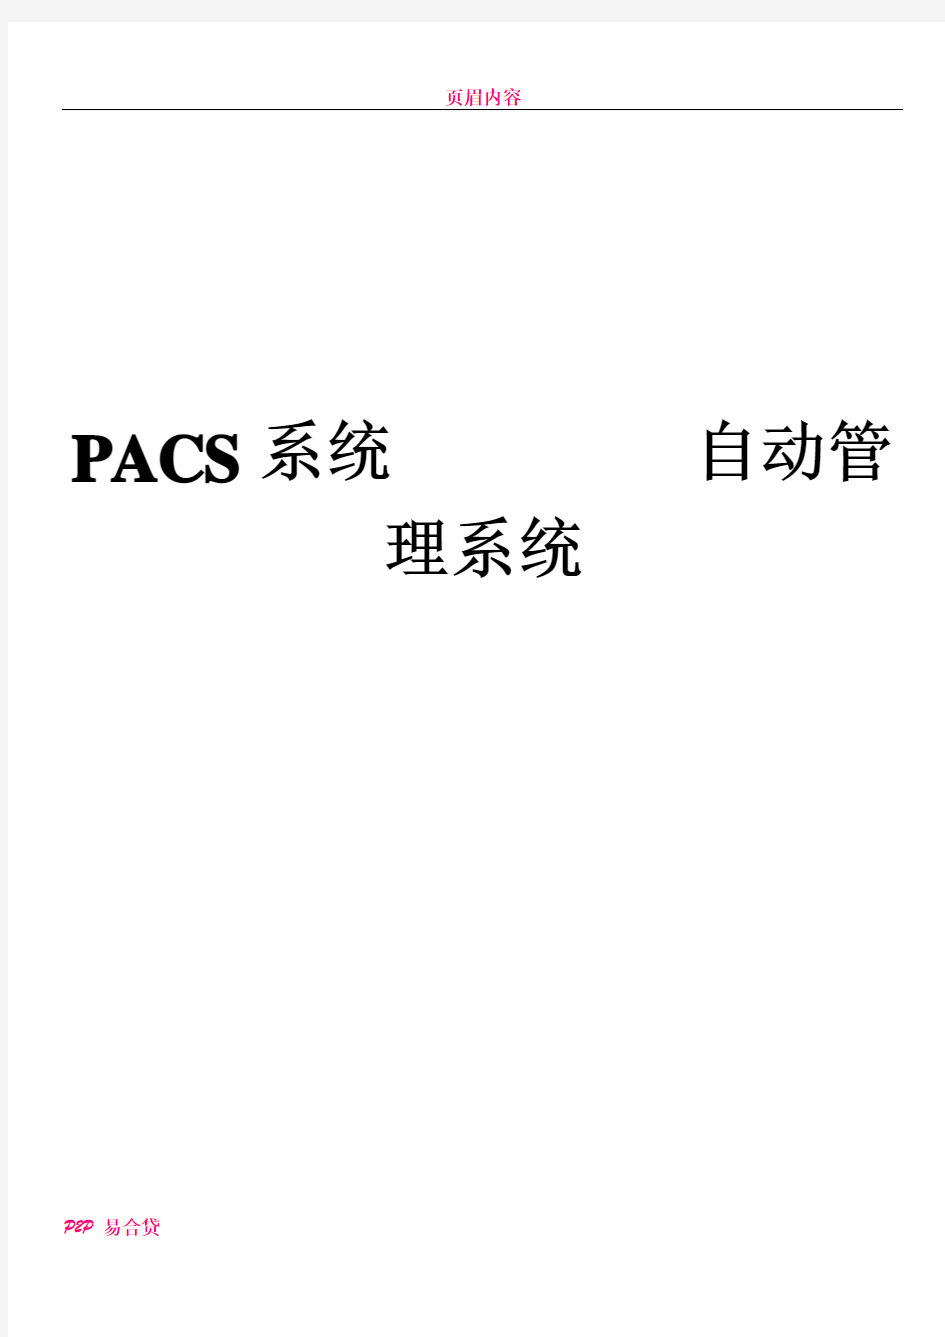 PACS系统数据管理迁移解决方案